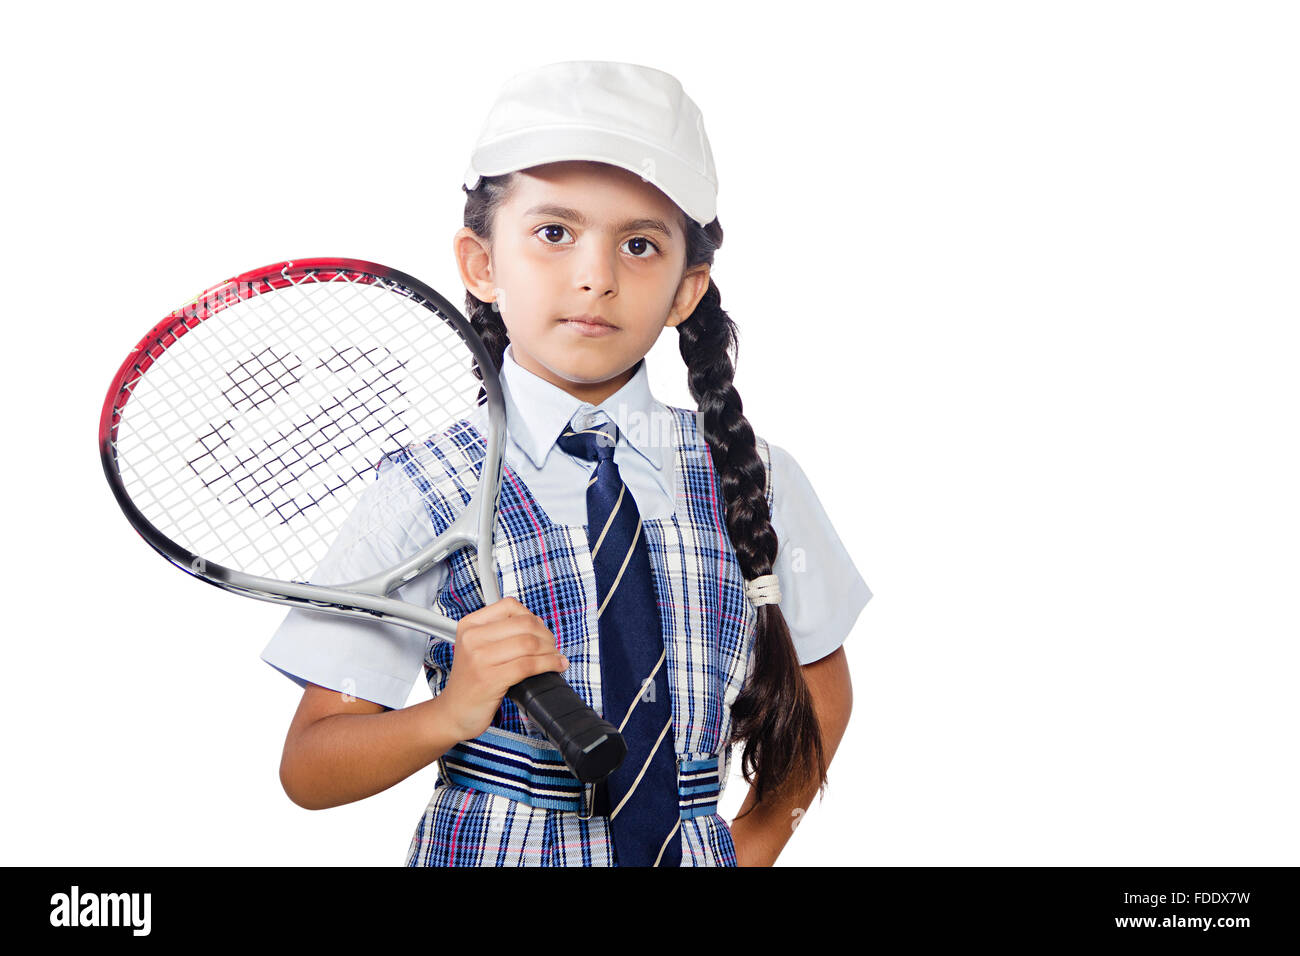 1 personne seule détermination girl hobby kid player tennis la réussite des élèves de l'école Banque D'Images